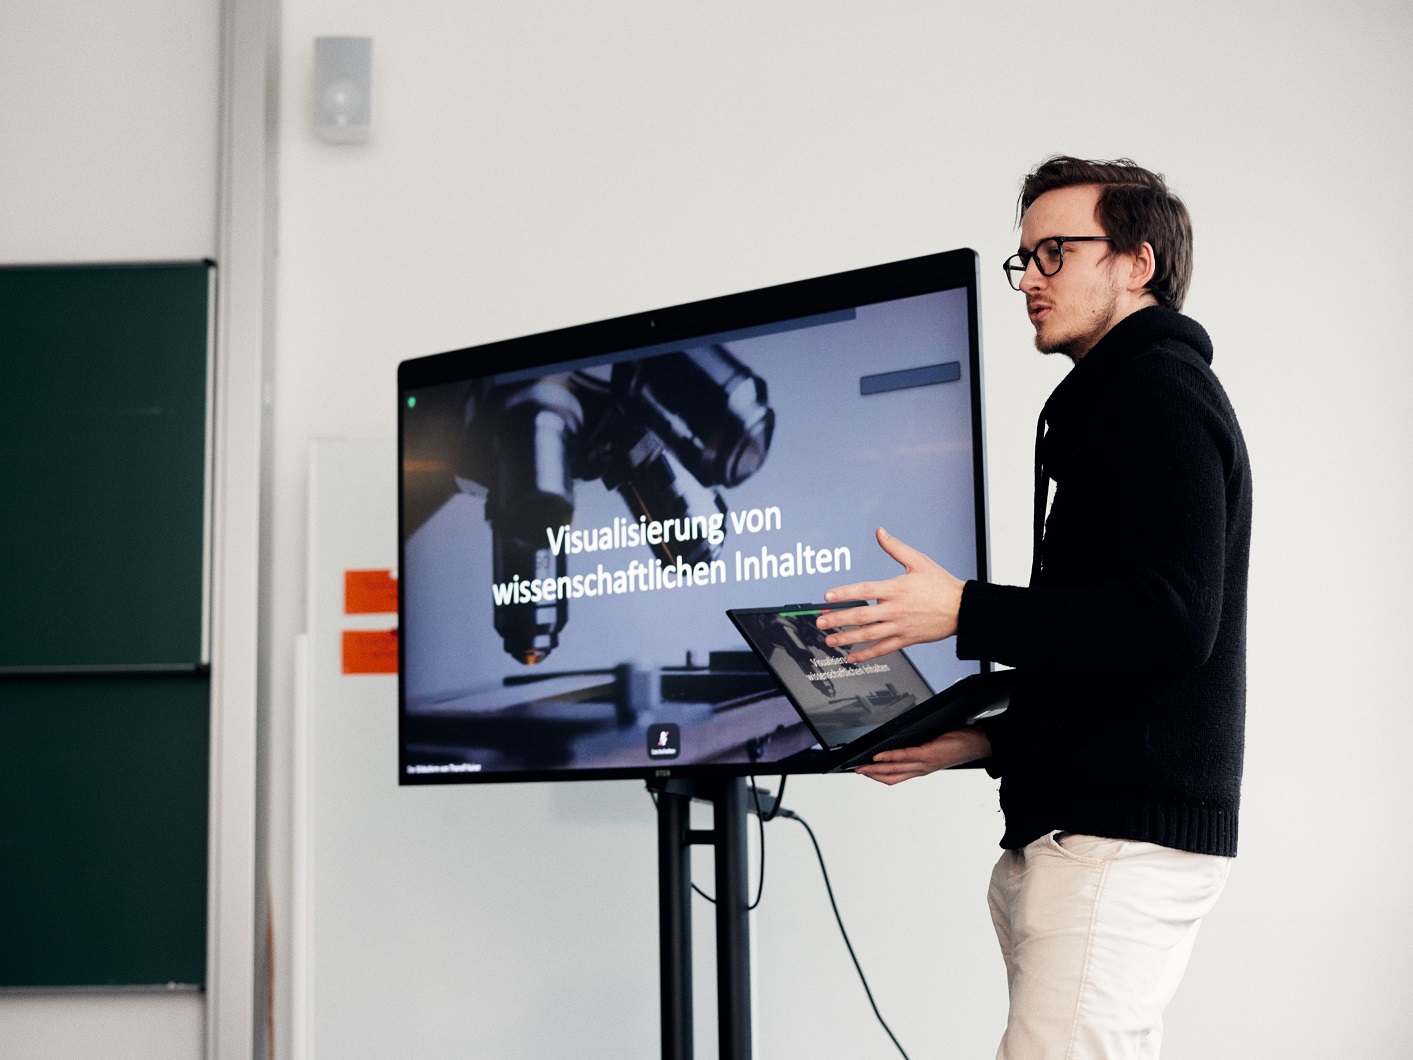 Ein Mann hält einen Laptop und stellt eine PowerPoint-Präsentation vor, die neben ihm auf einem großen Bildschirm angezeigt wird